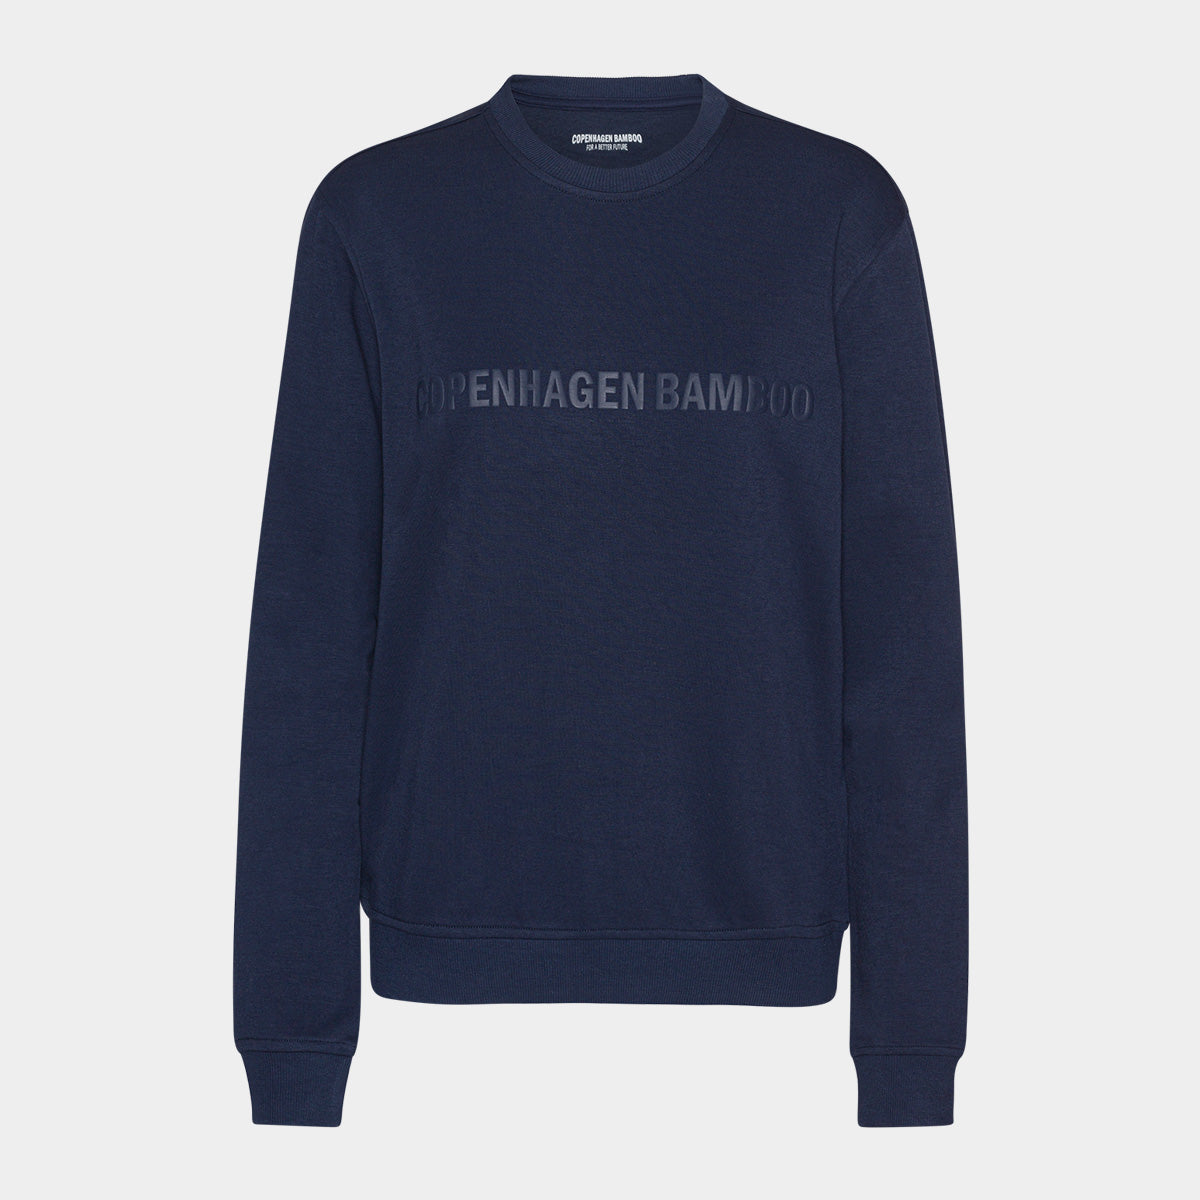 Se Navy bambus sweatshirt til dame med logo fra Copenhagen Bamboo, L hos Bambustøj.dk